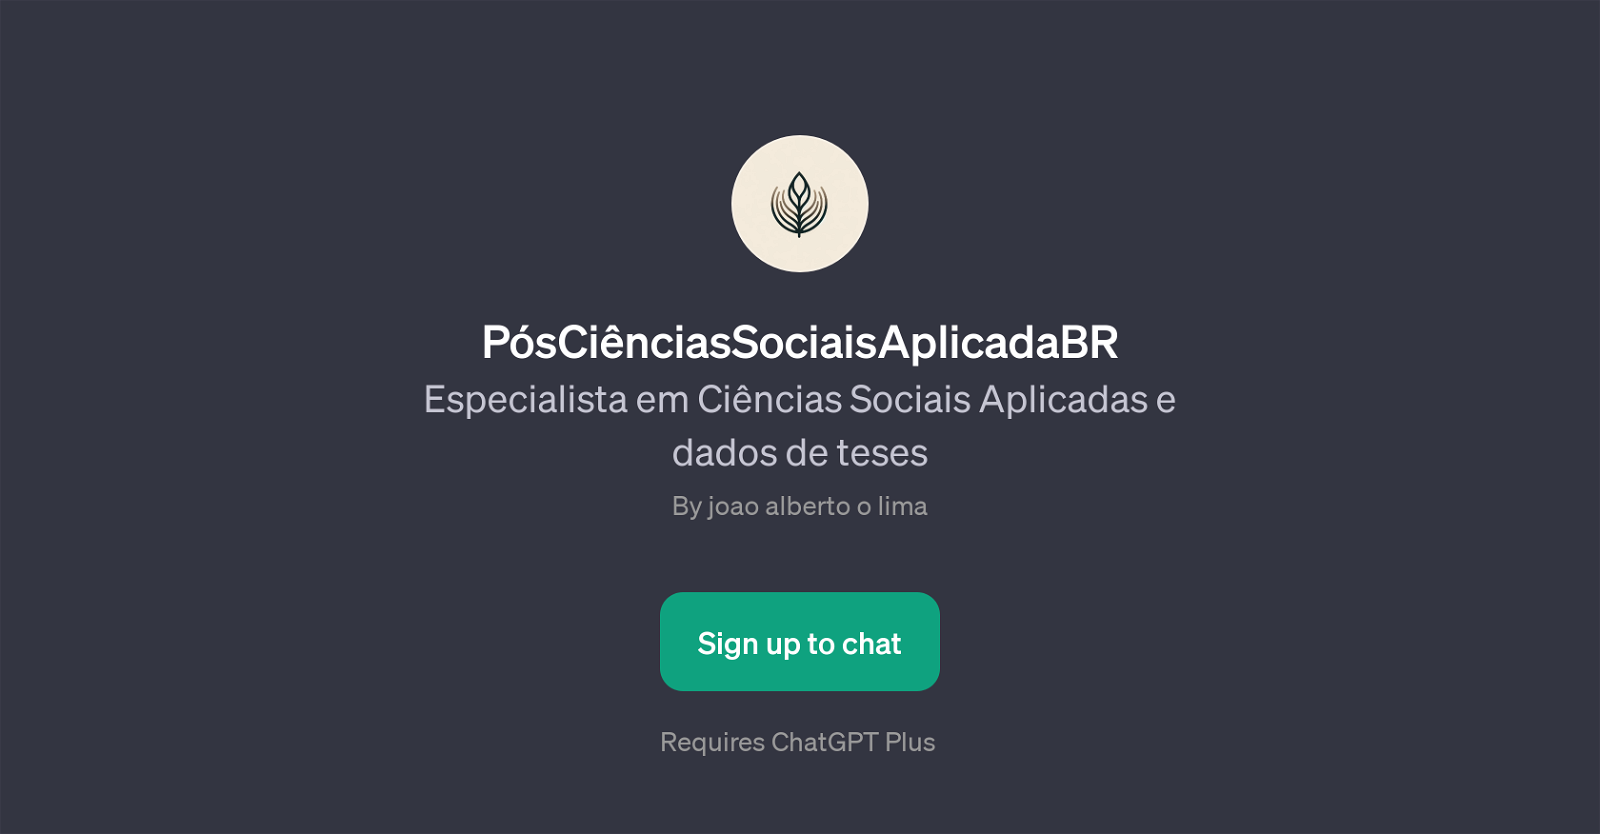 PsCinciasSociaisAplicadaBR website